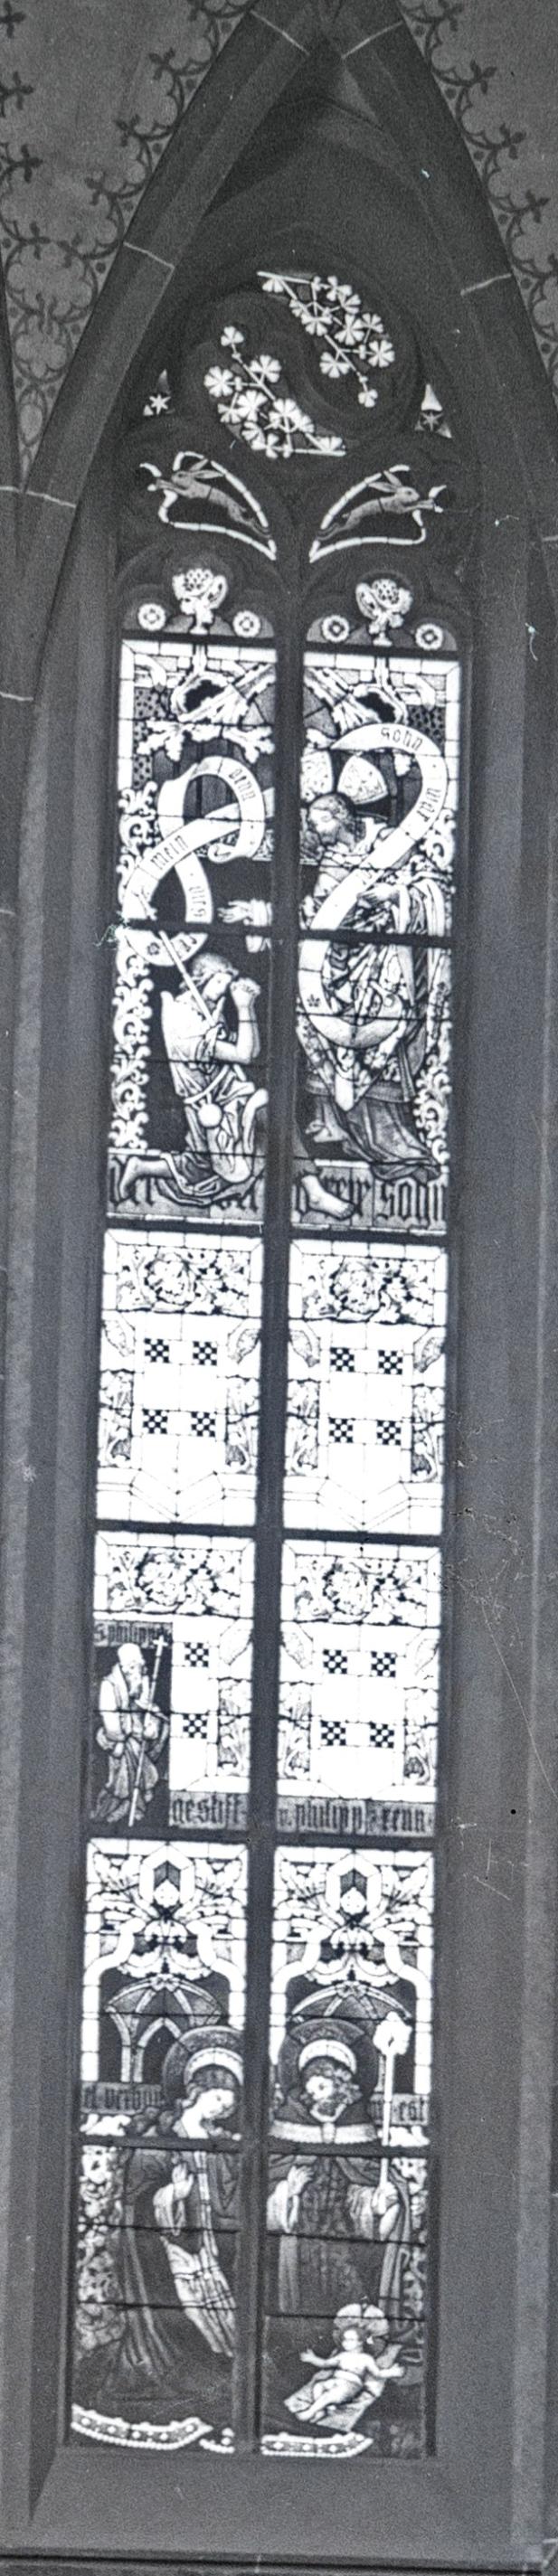 Herz Jesu Chor Fenster 2a (c) St. Elisabeth